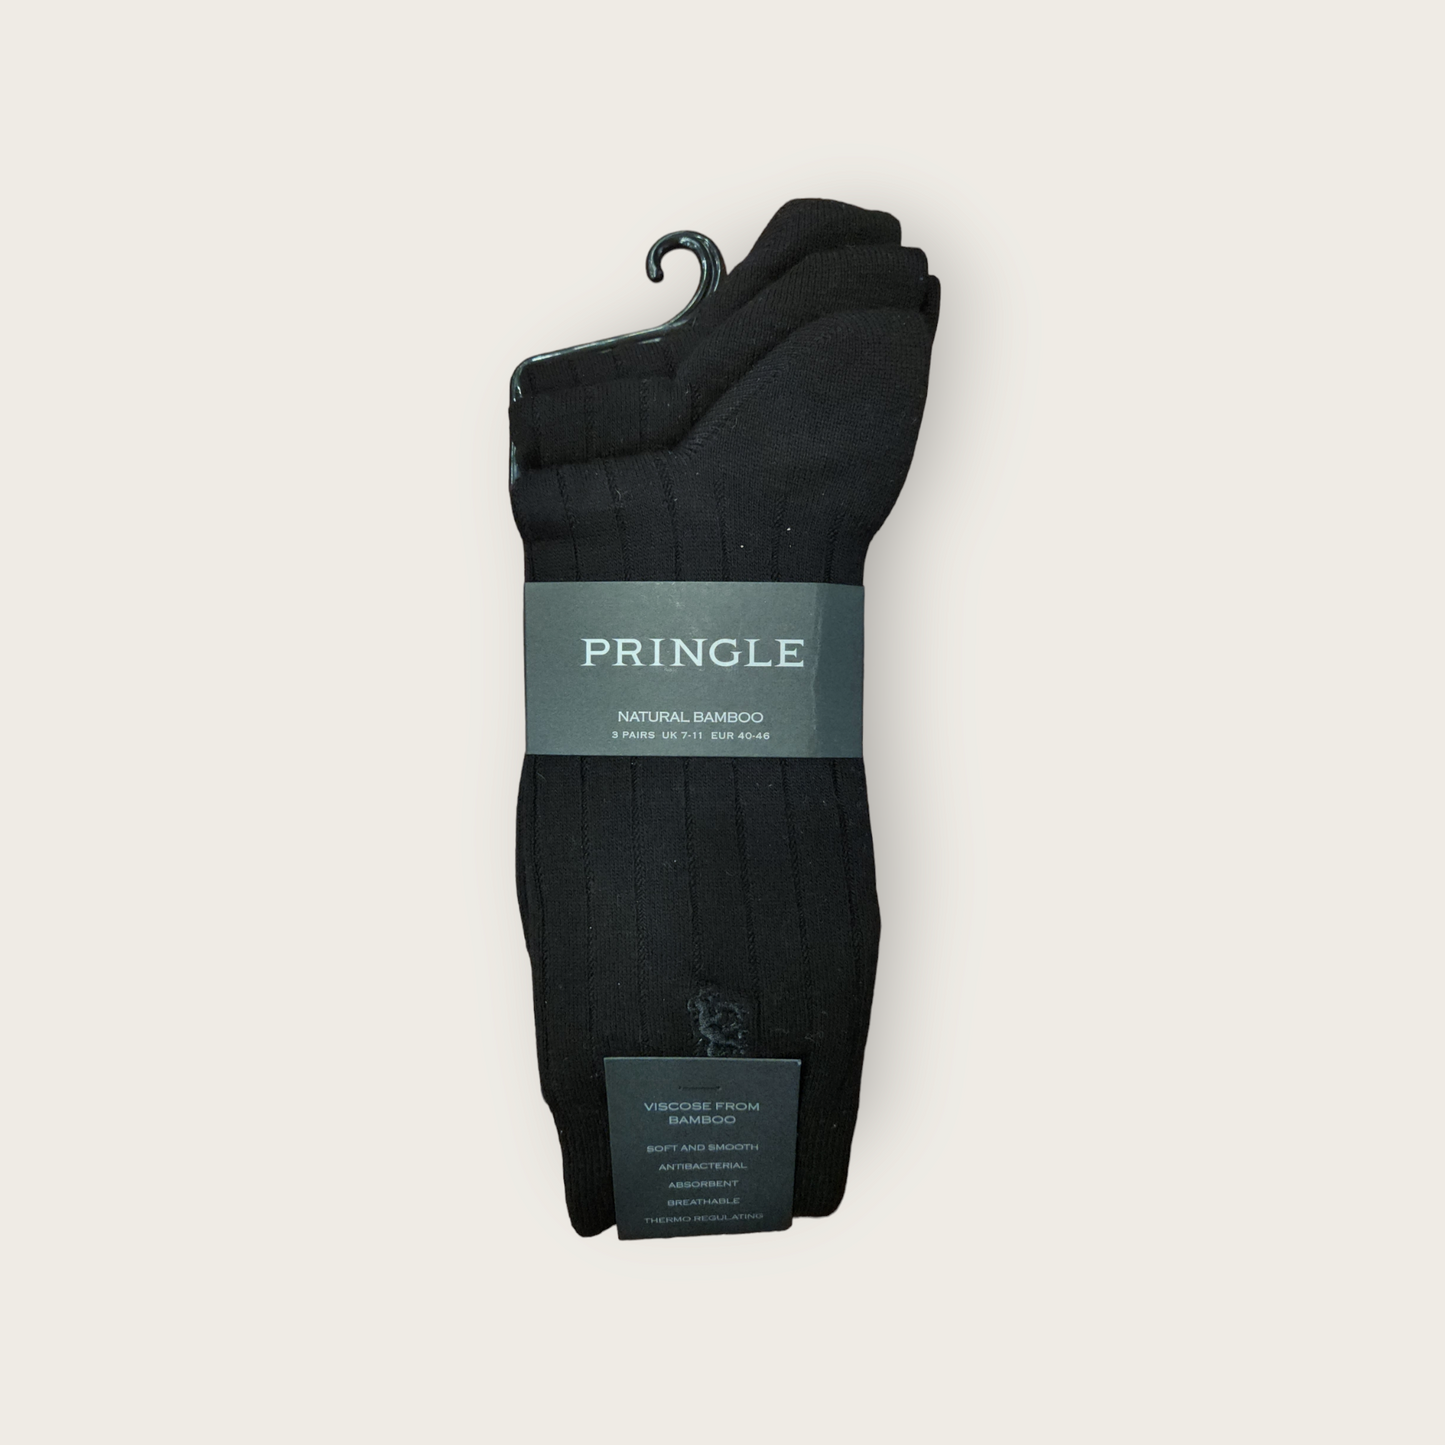 Pringle Natural Bamboo Socks 3 Pack - Black Ribbed